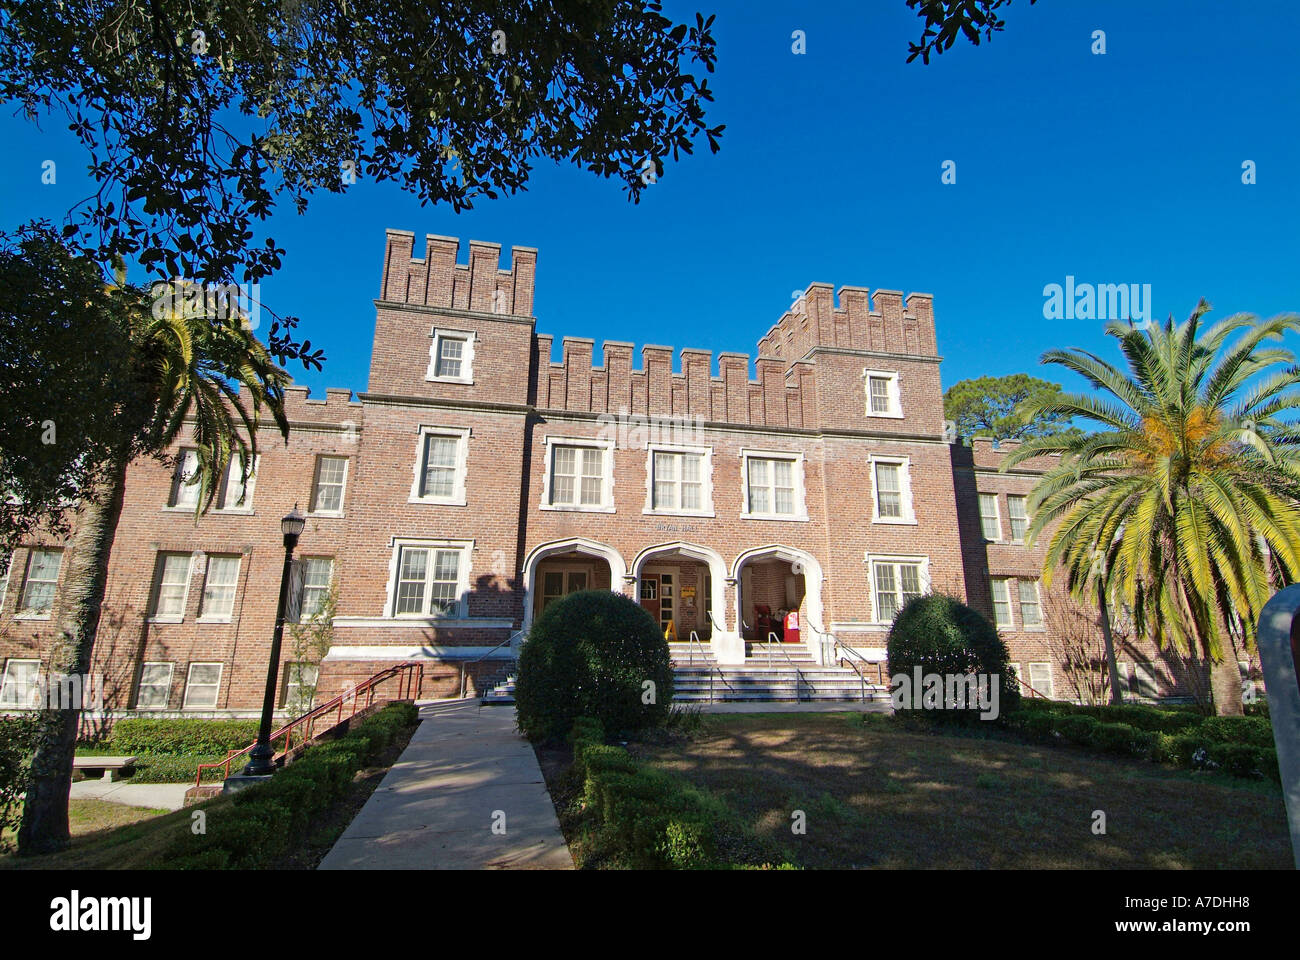 Bryan Hall, le campus de l'Université d'État de Floride Floride Tallahassee FL Seminoles Banque D'Images